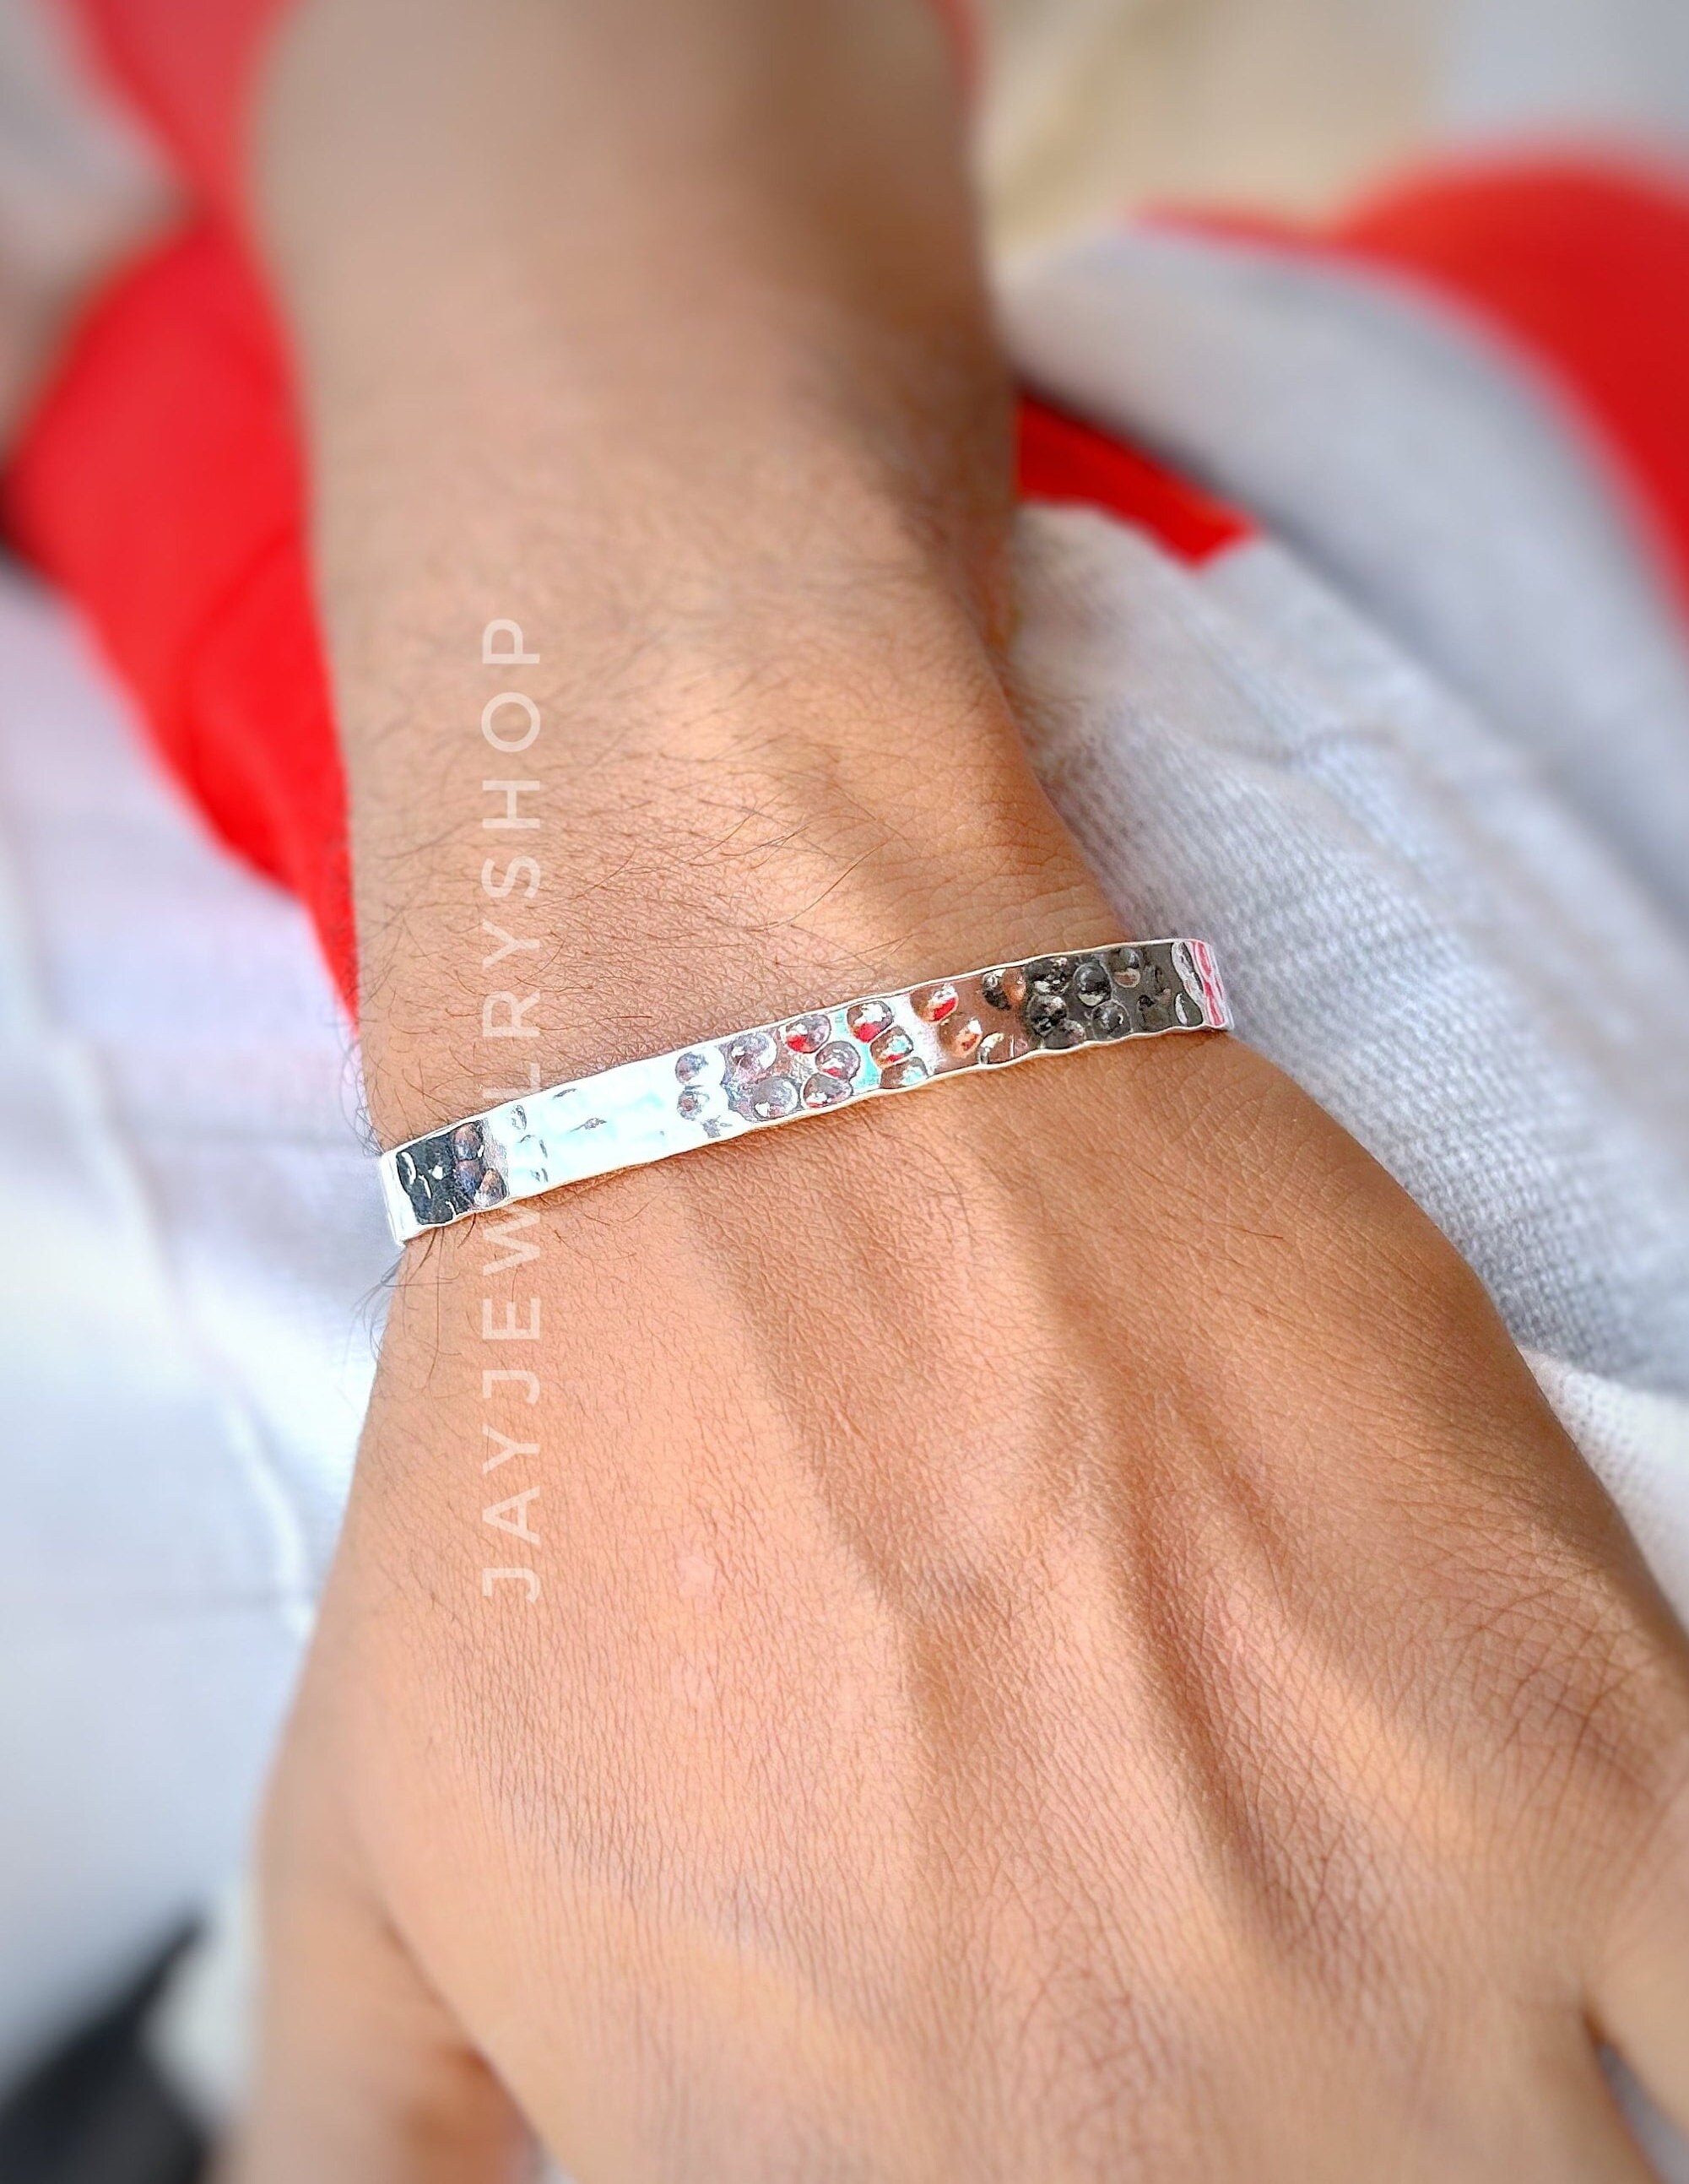 Silver Bracelets for Women